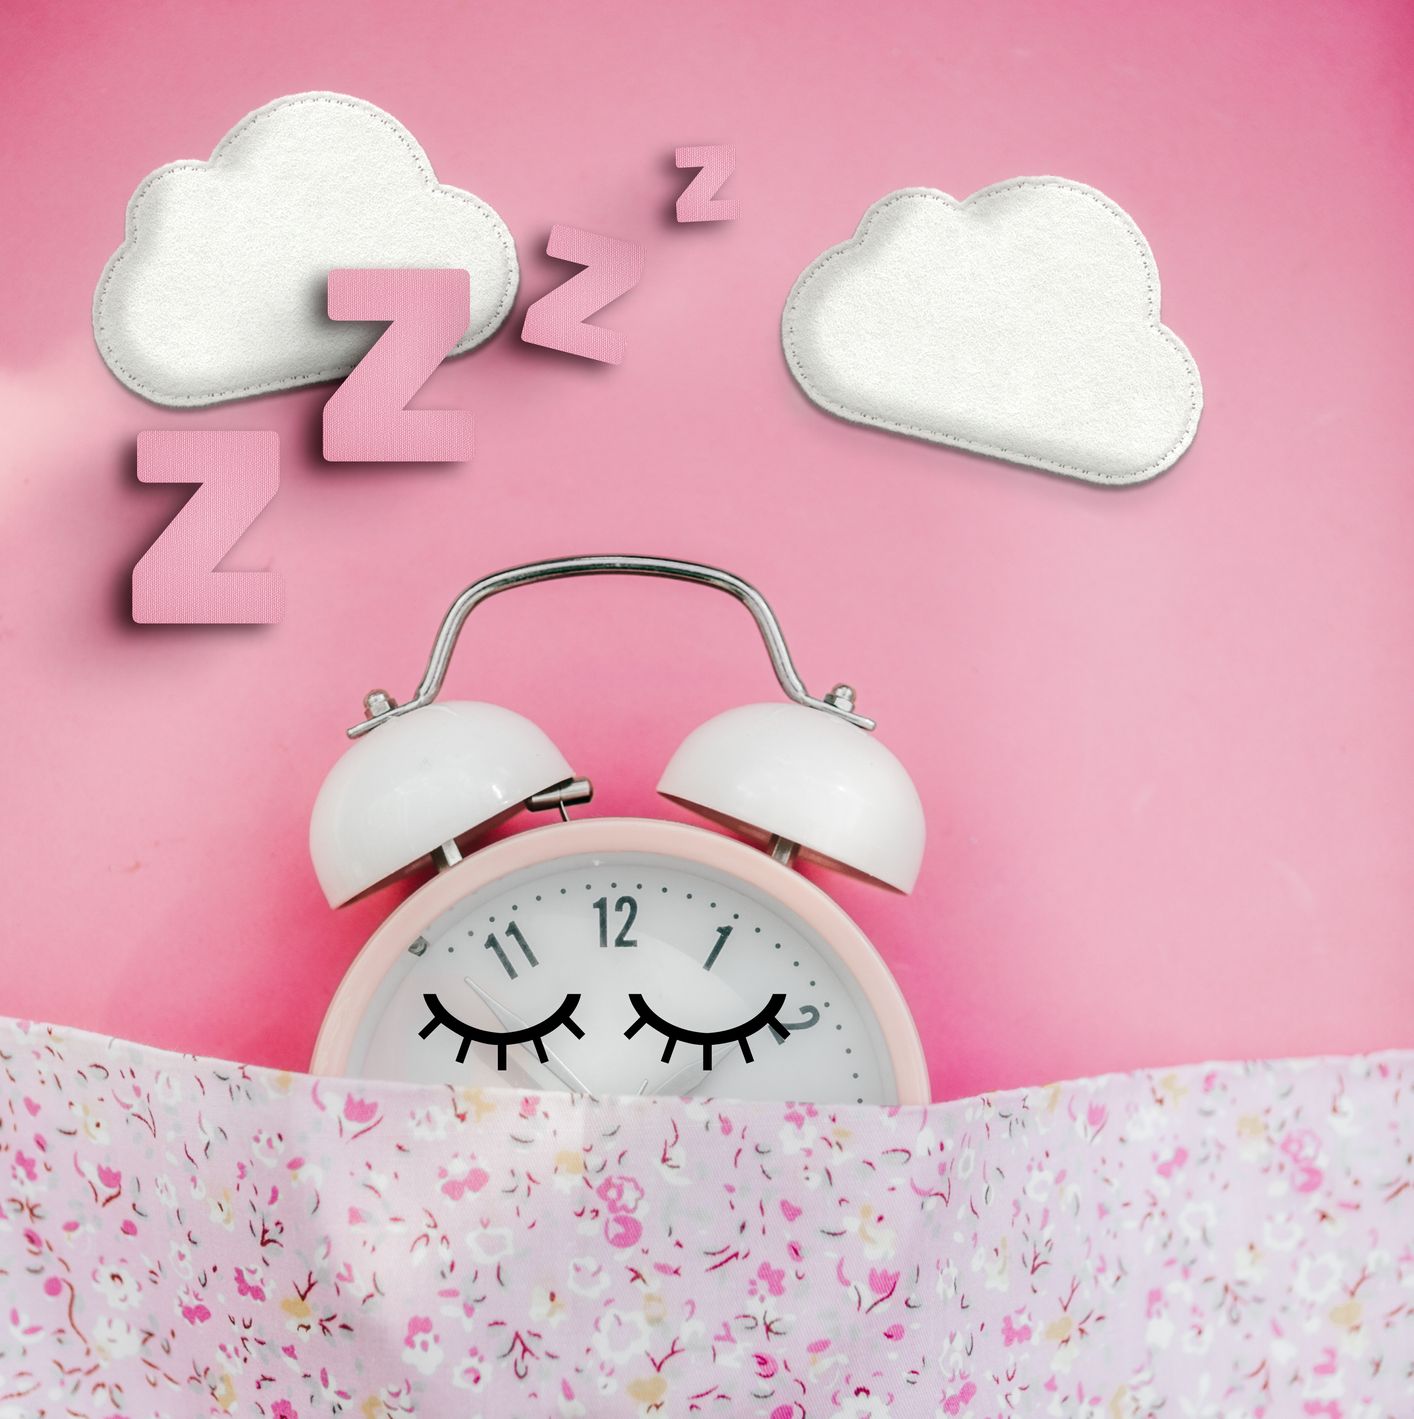 ¿Cuántas horas de sueño necesita realmente? Revisión de los rangos de sueño saludables para todas las edades